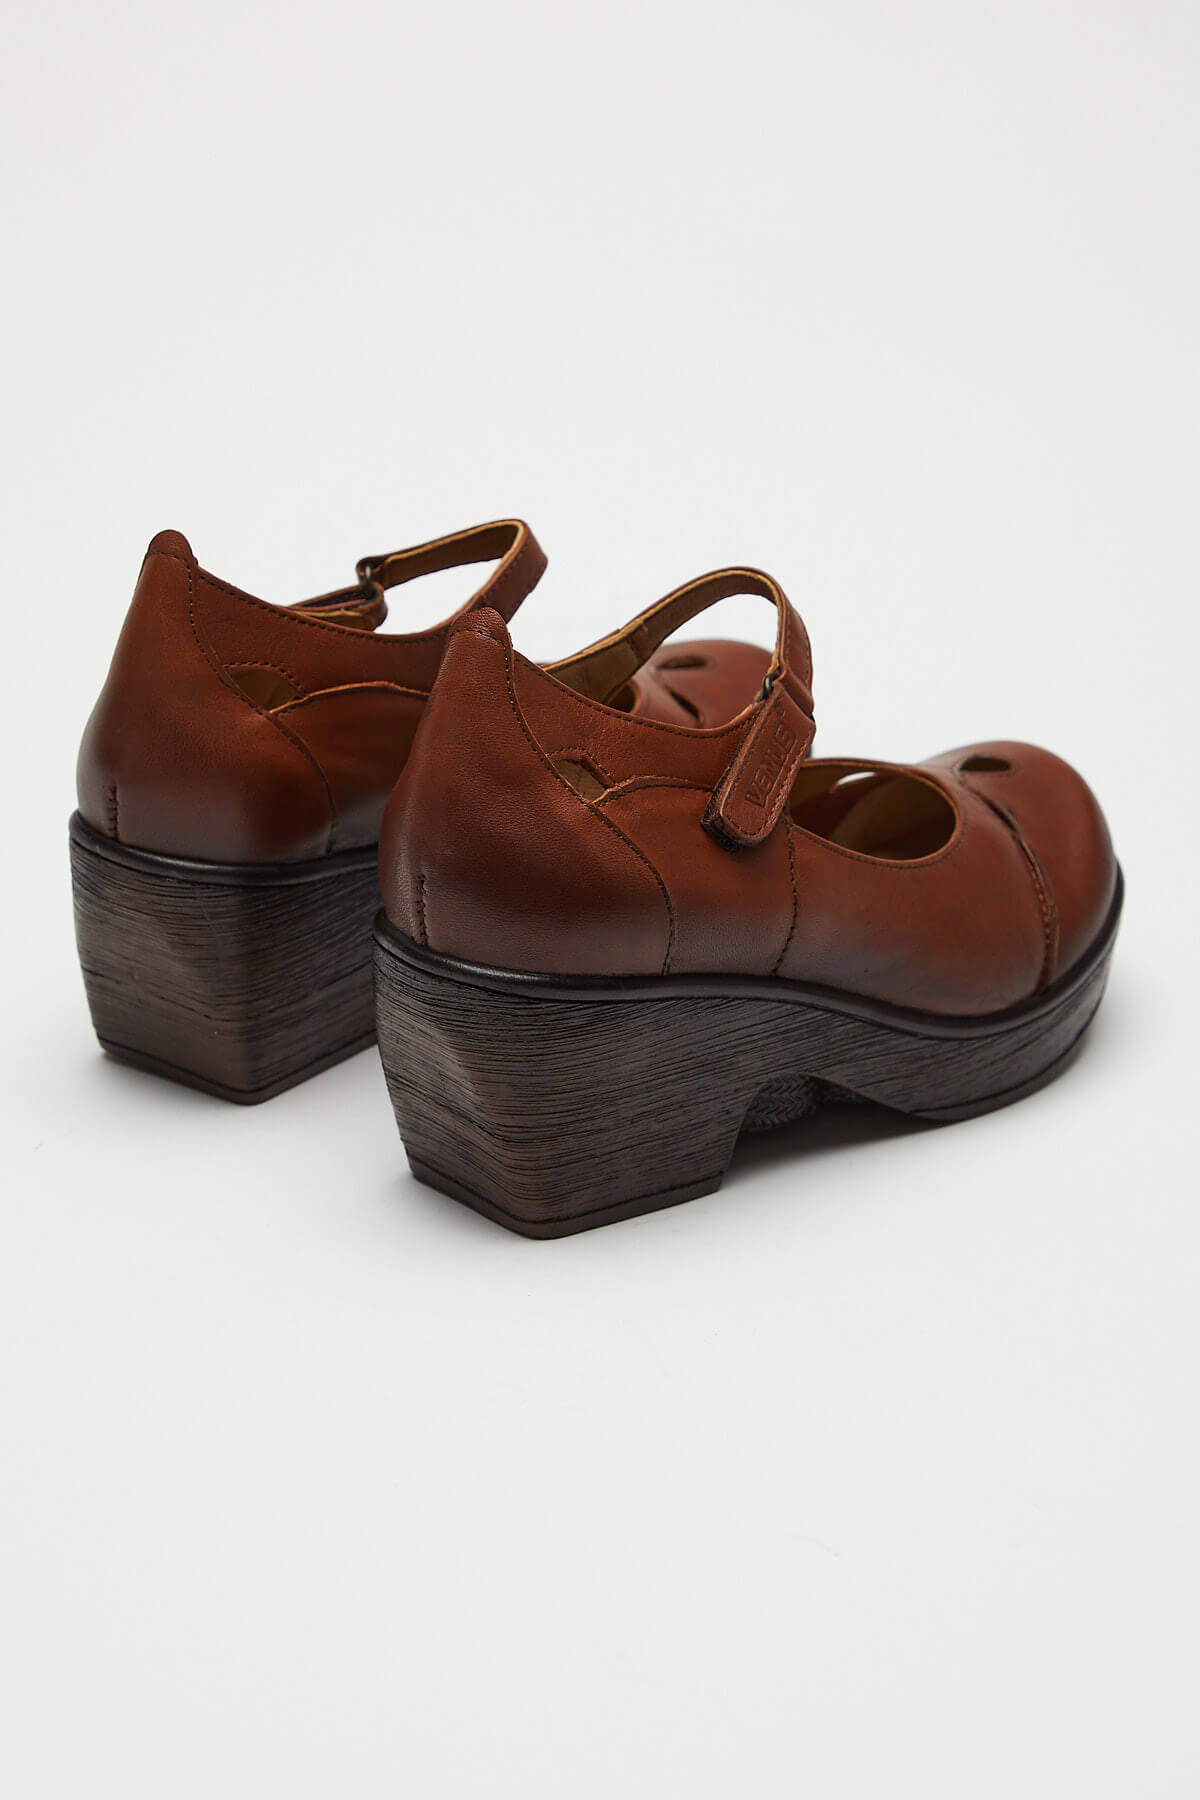 Kadın Apartman Topuk Deri Ayakkabı Kahve 1912501